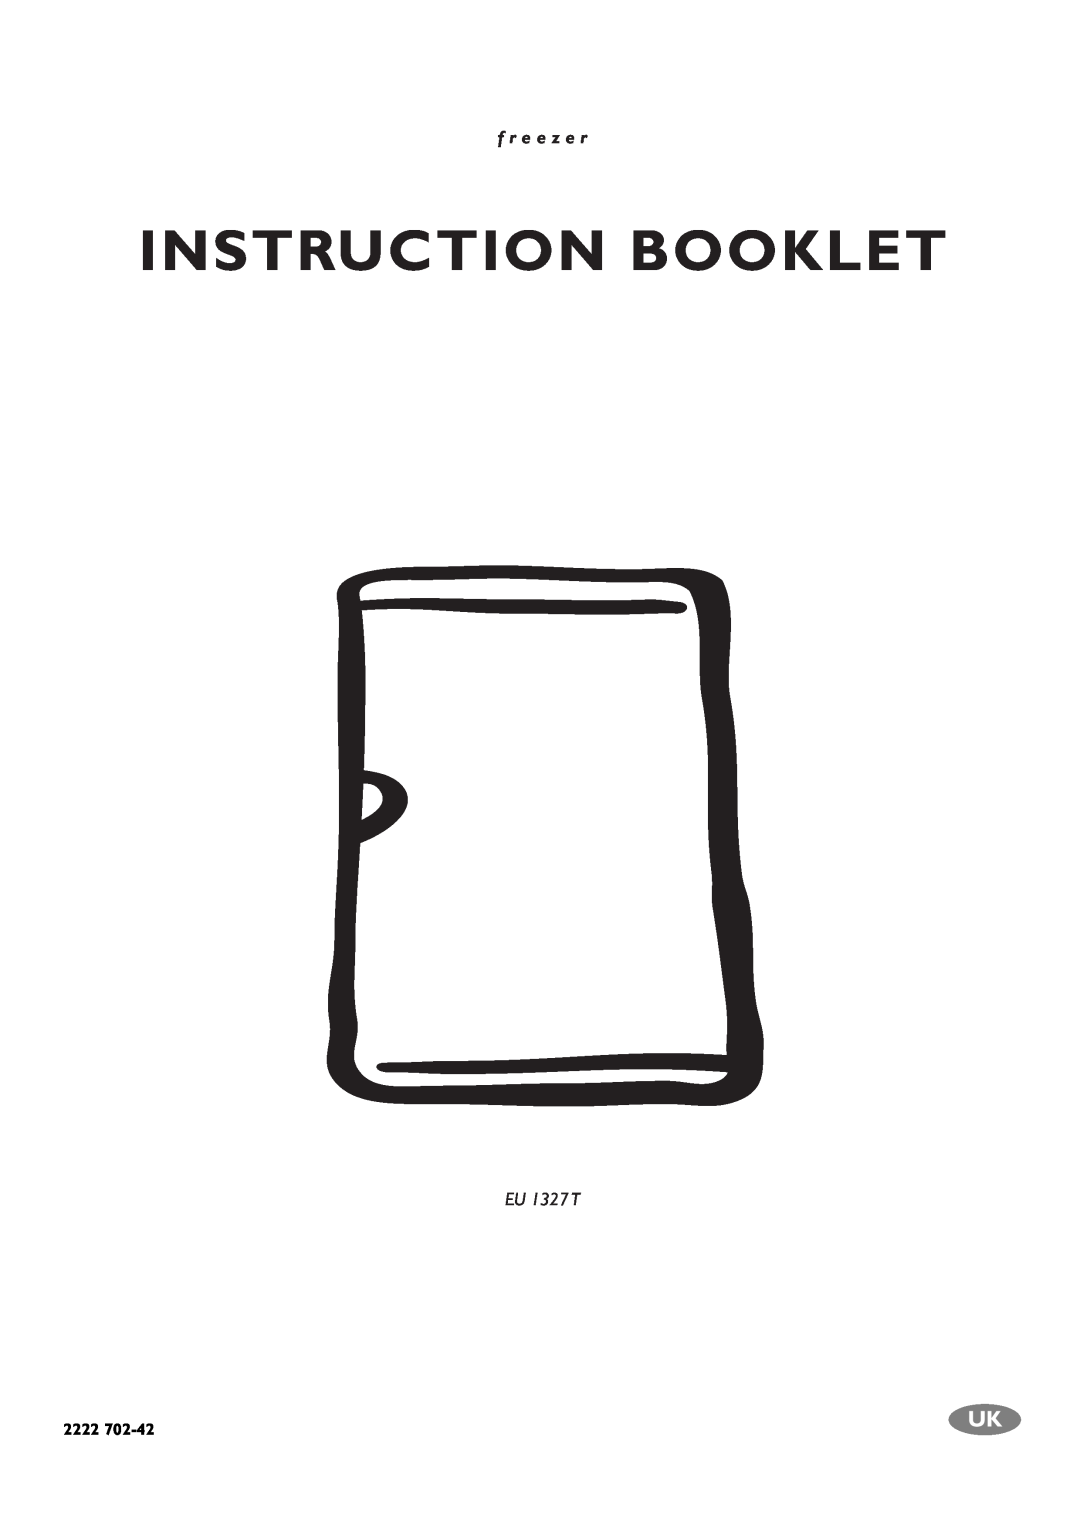 Electrolux EU 1327T manual Instruction Booklet, f r e e z e r, EU 1327 T, 2222 